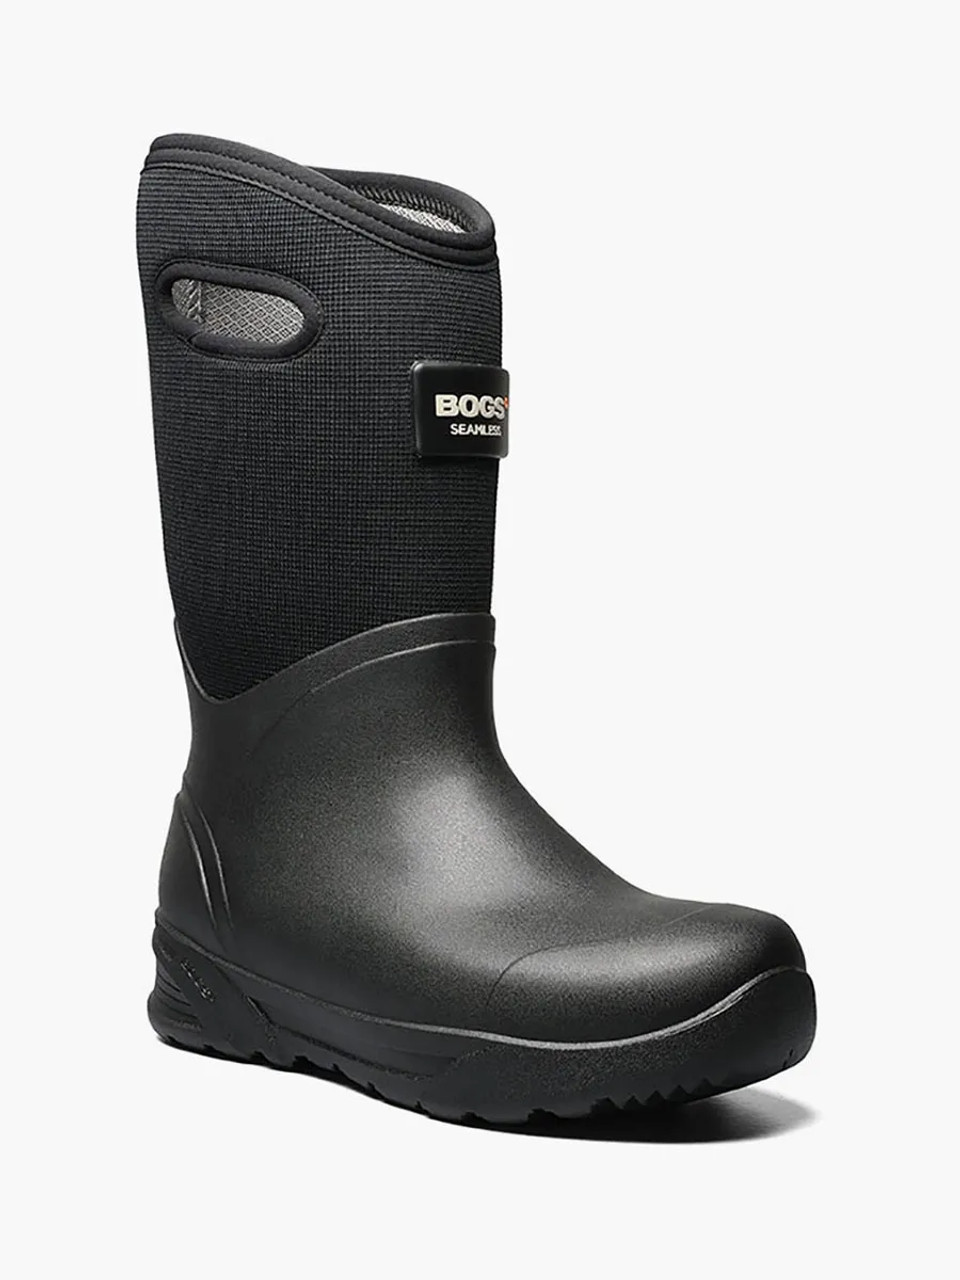 Bogs Bozeman Tall Men's Insulated Waterproof Boots